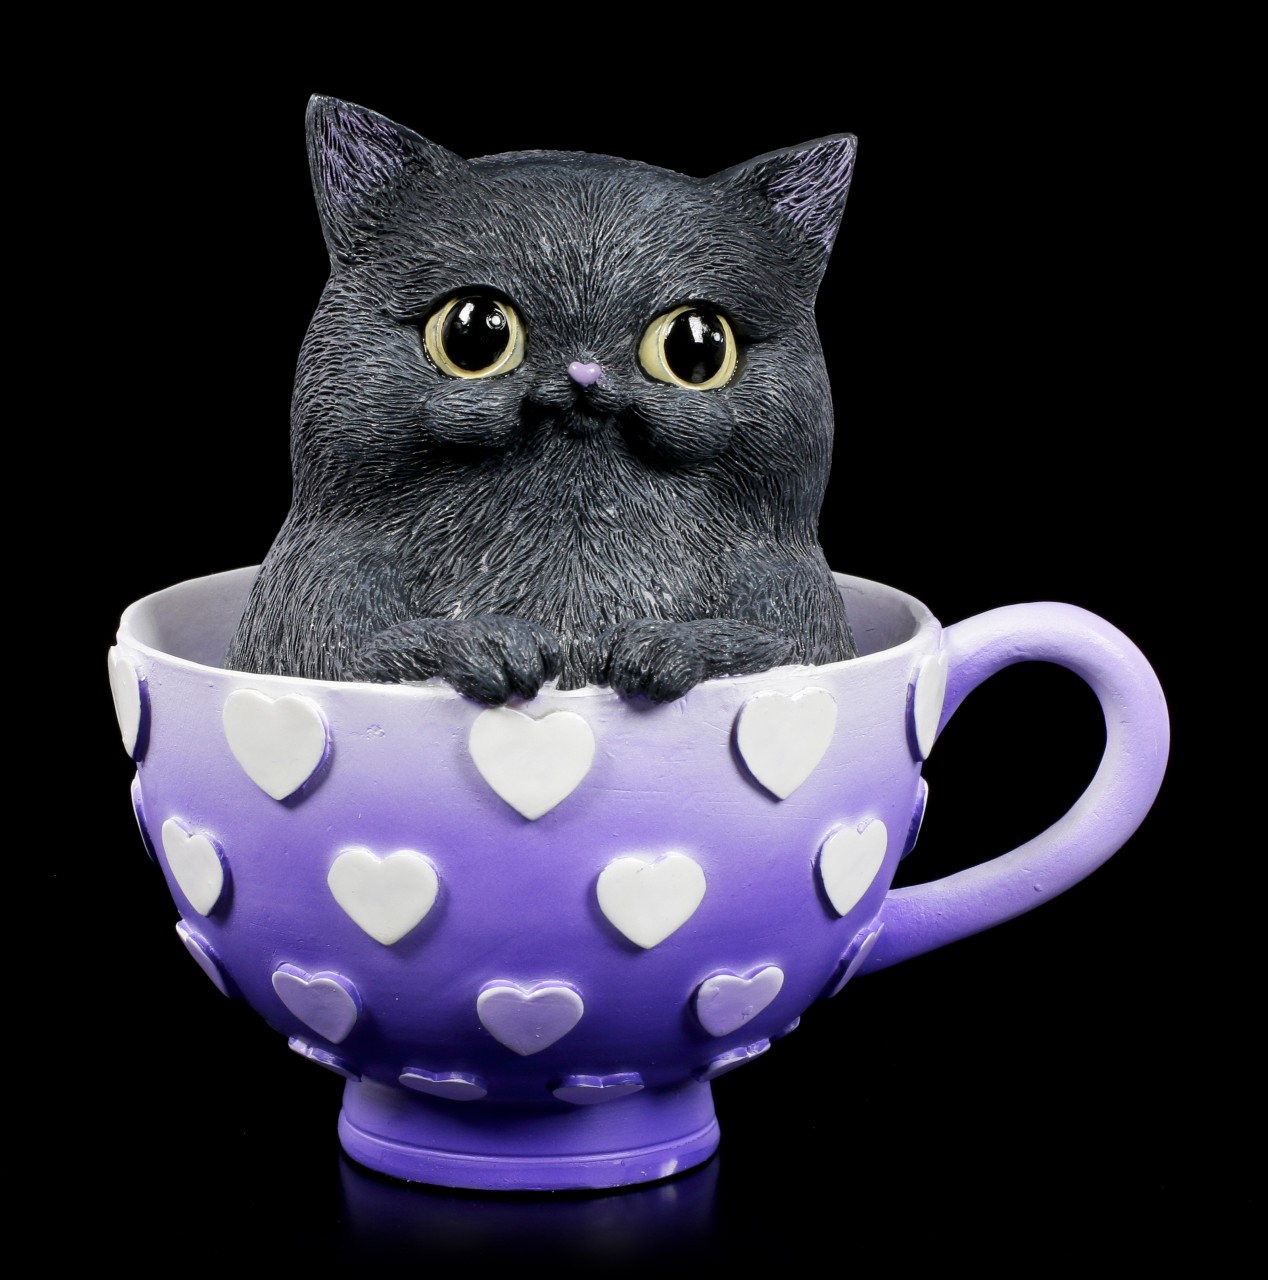 Cat Figurine - Cutiecat in Cup